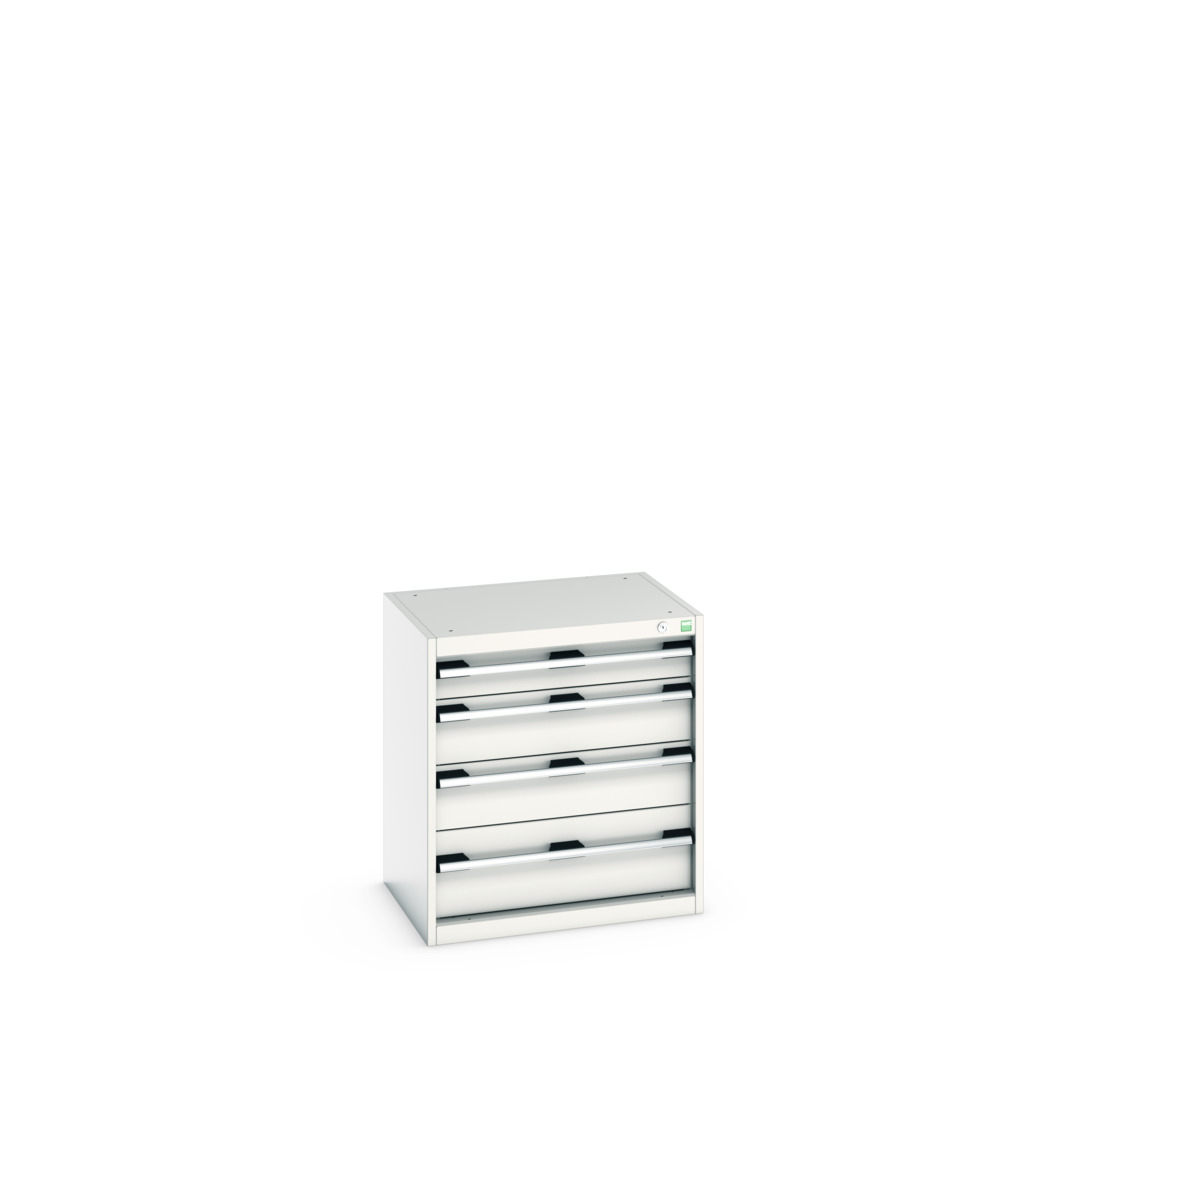 40011062.16V - cubio drawer cabinet